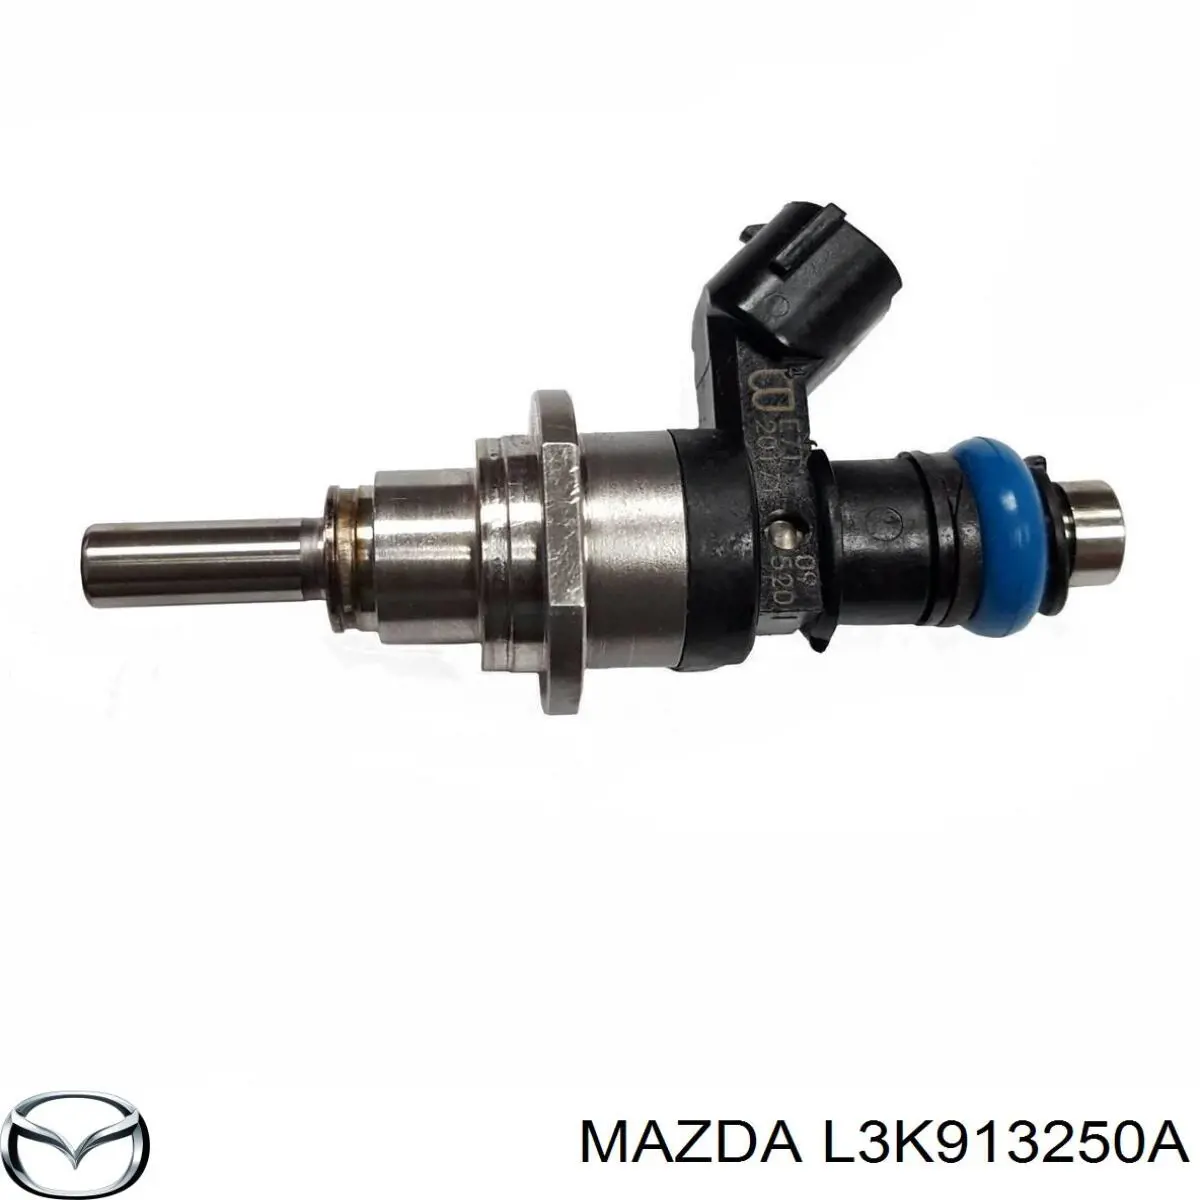 Injetor de injeção de combustível para Mazda CX-7 